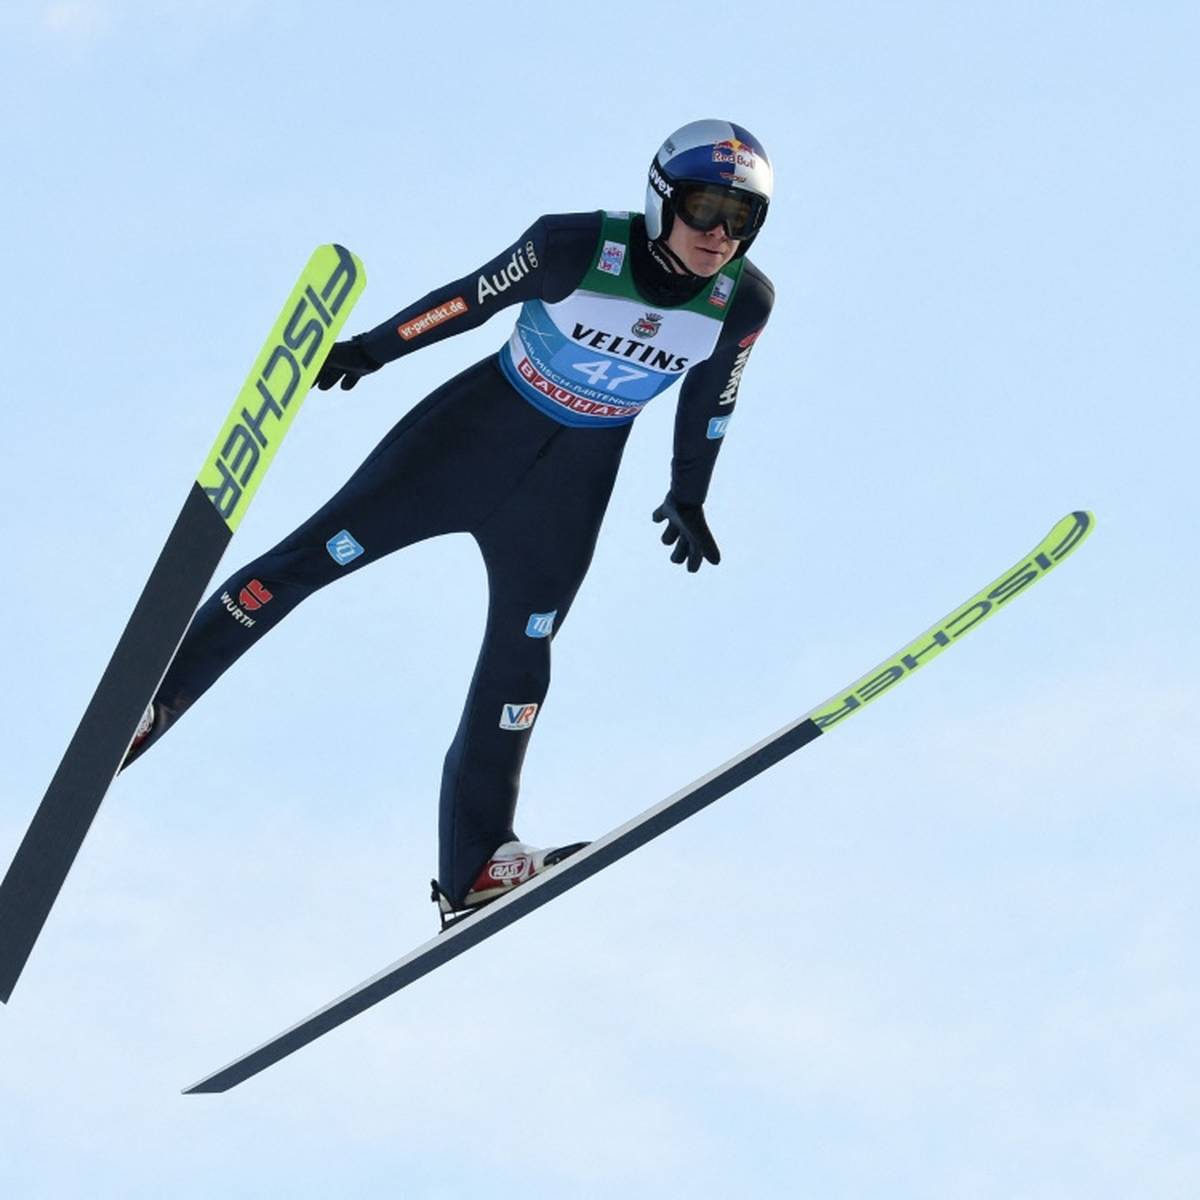 Skisprung-Olympiasieger Andreas Wellinger droht nach einem positiven Coronatest das Aus für die Winterspiele in Peking.